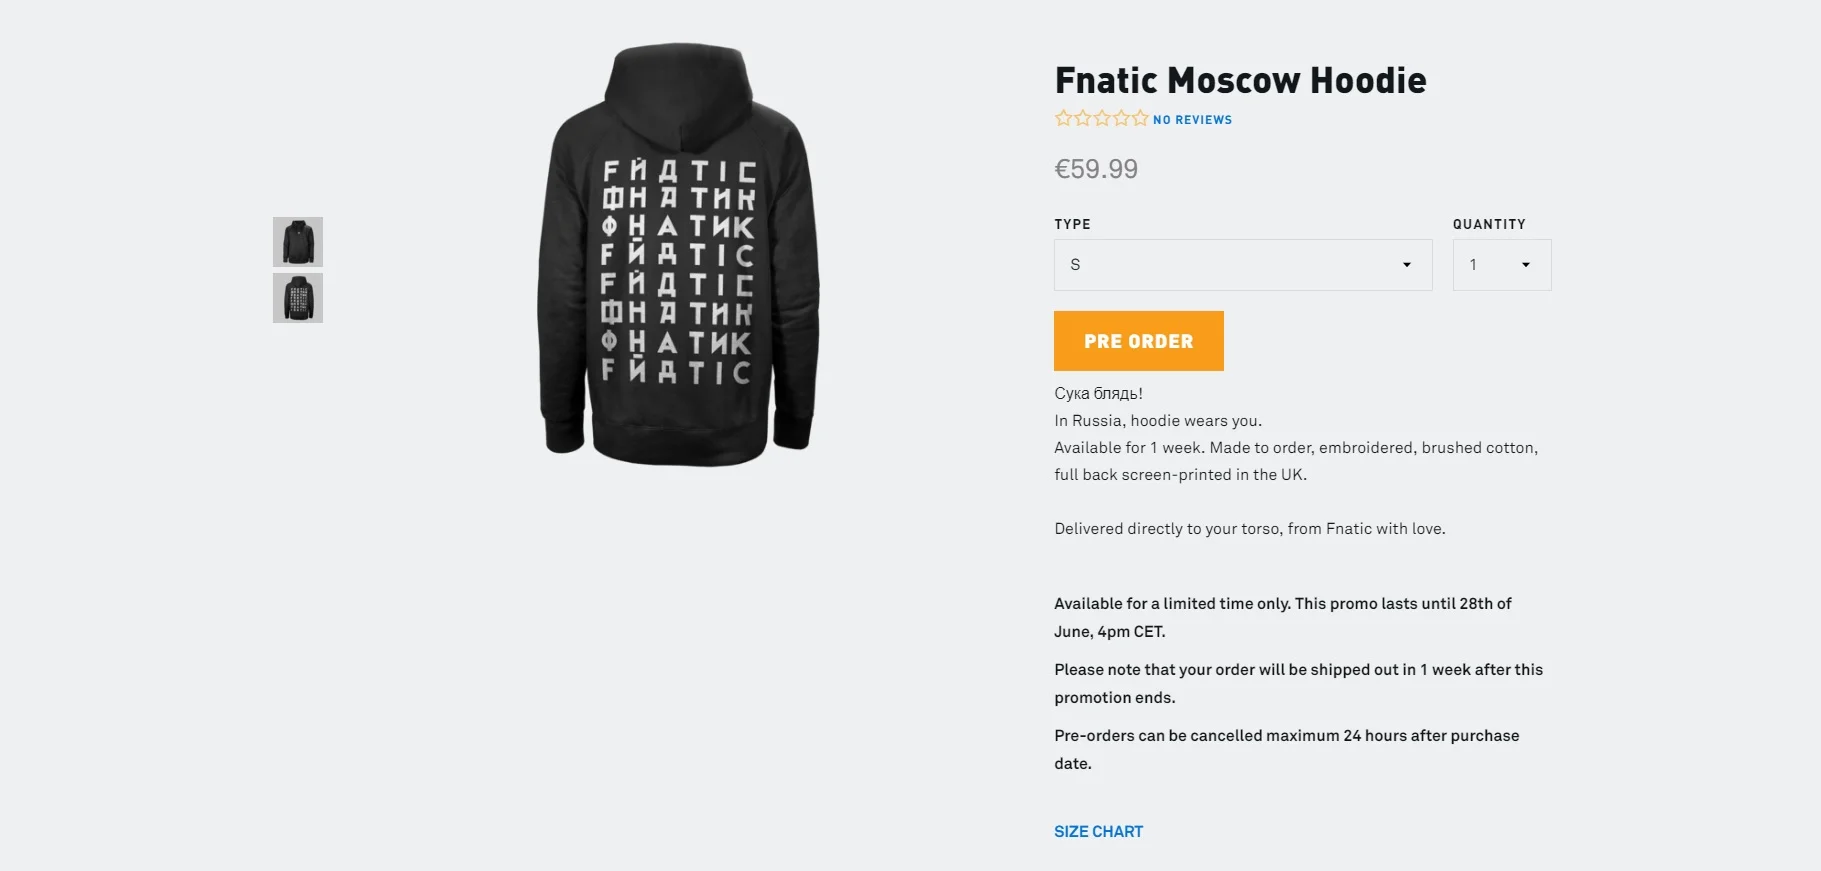 «Сука Бл**ь». Команда Fnatic создала лимитированный мерч для России, не забыв про мат - фото 2